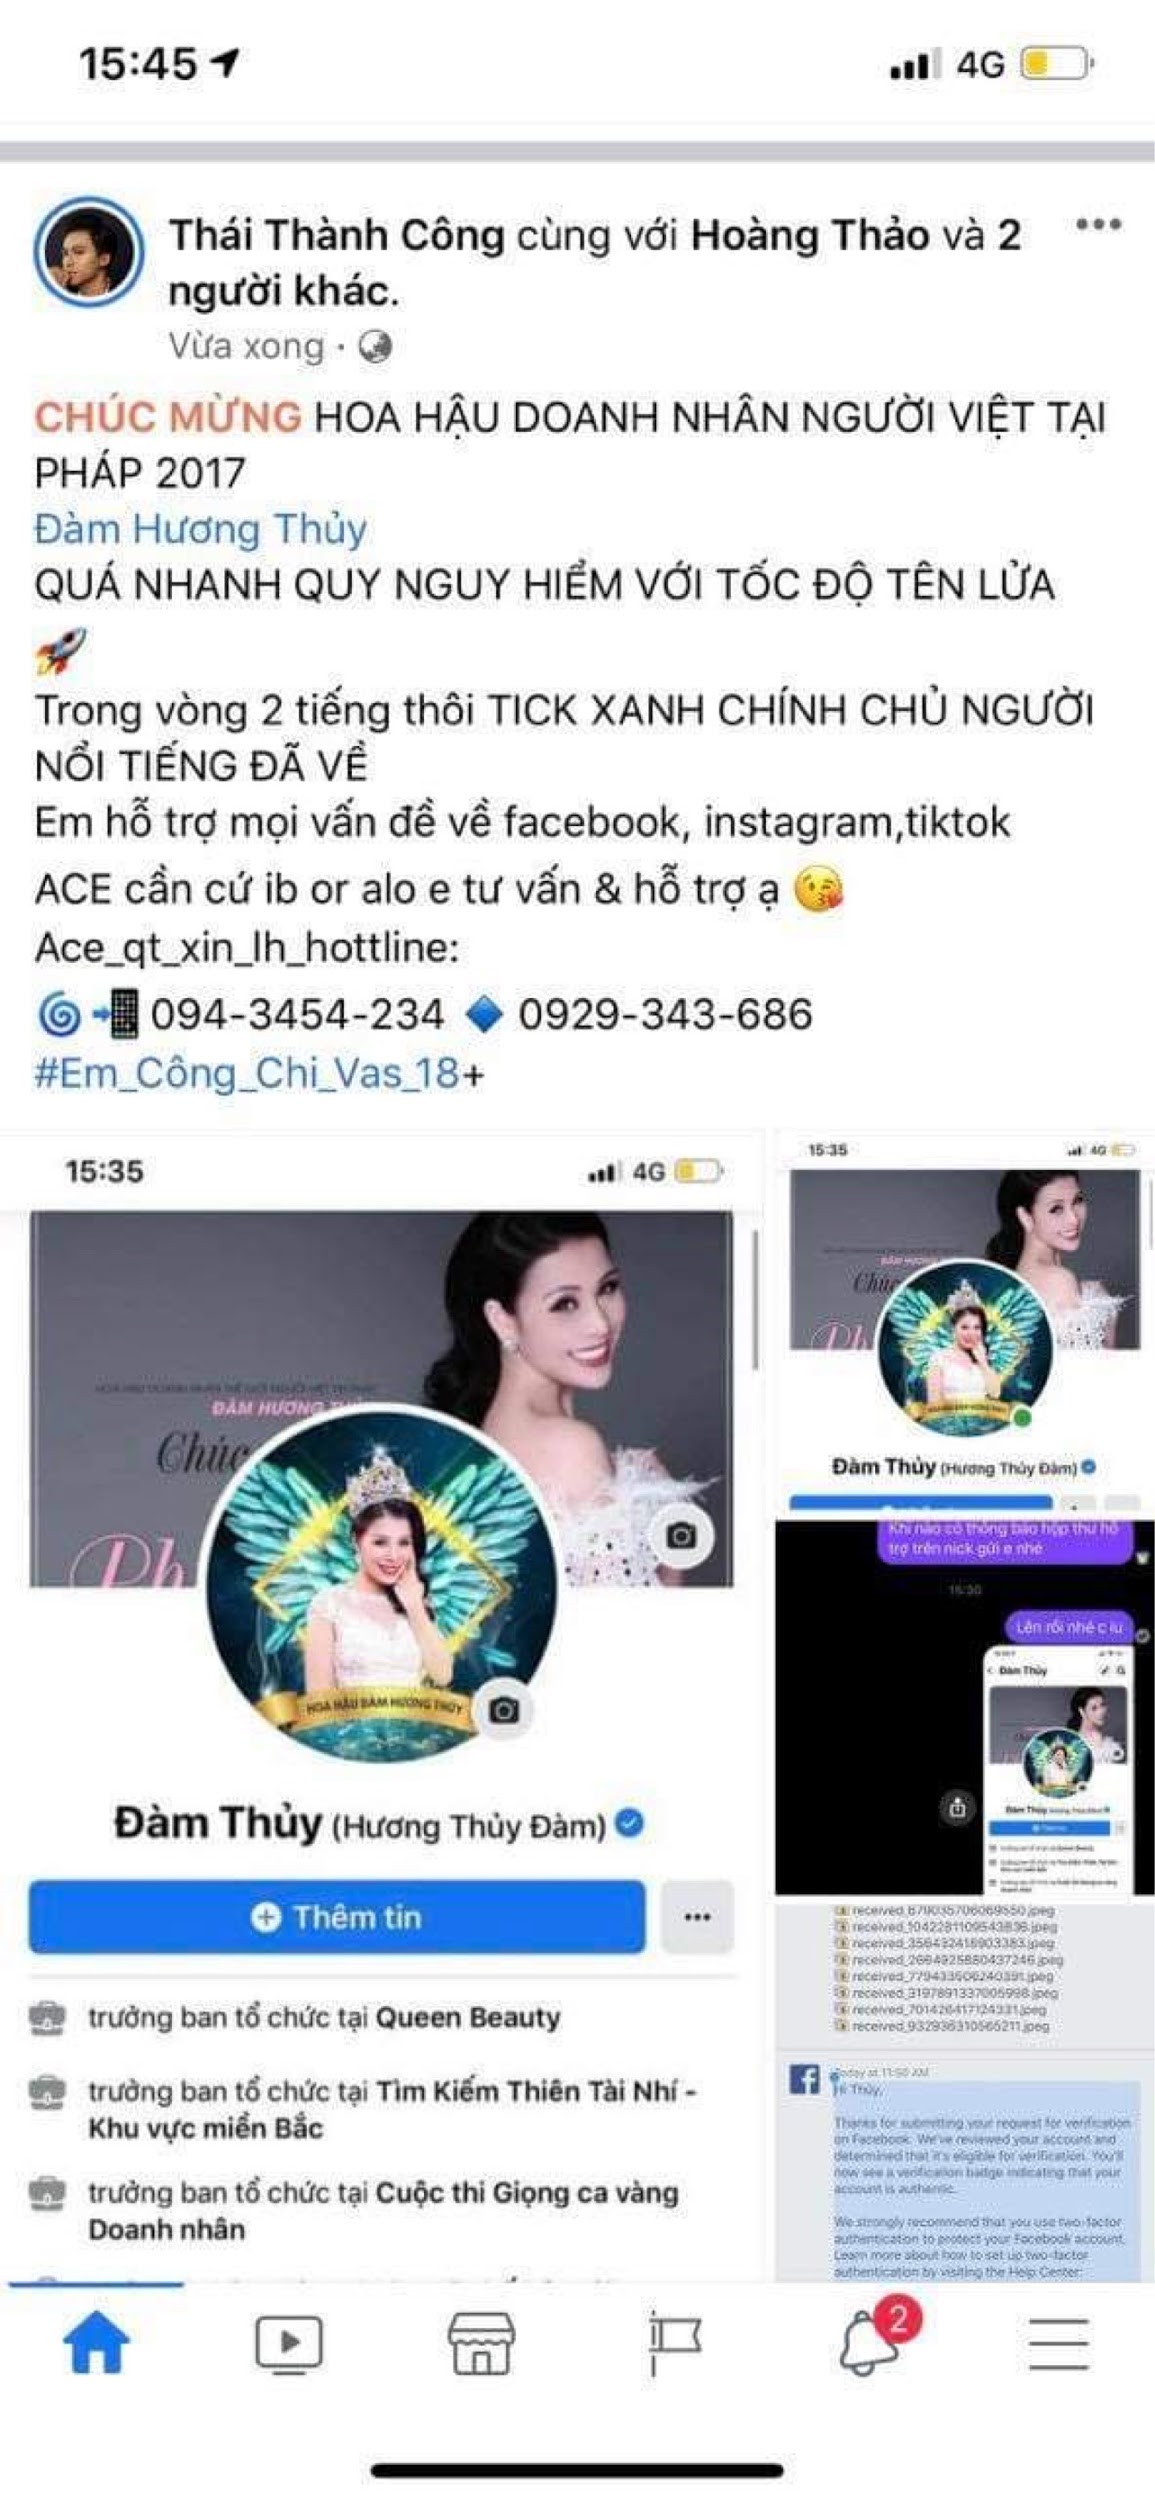 Ca sĩ Thái Thành Công chuyên gia marketing trong giới nghệ sĩ